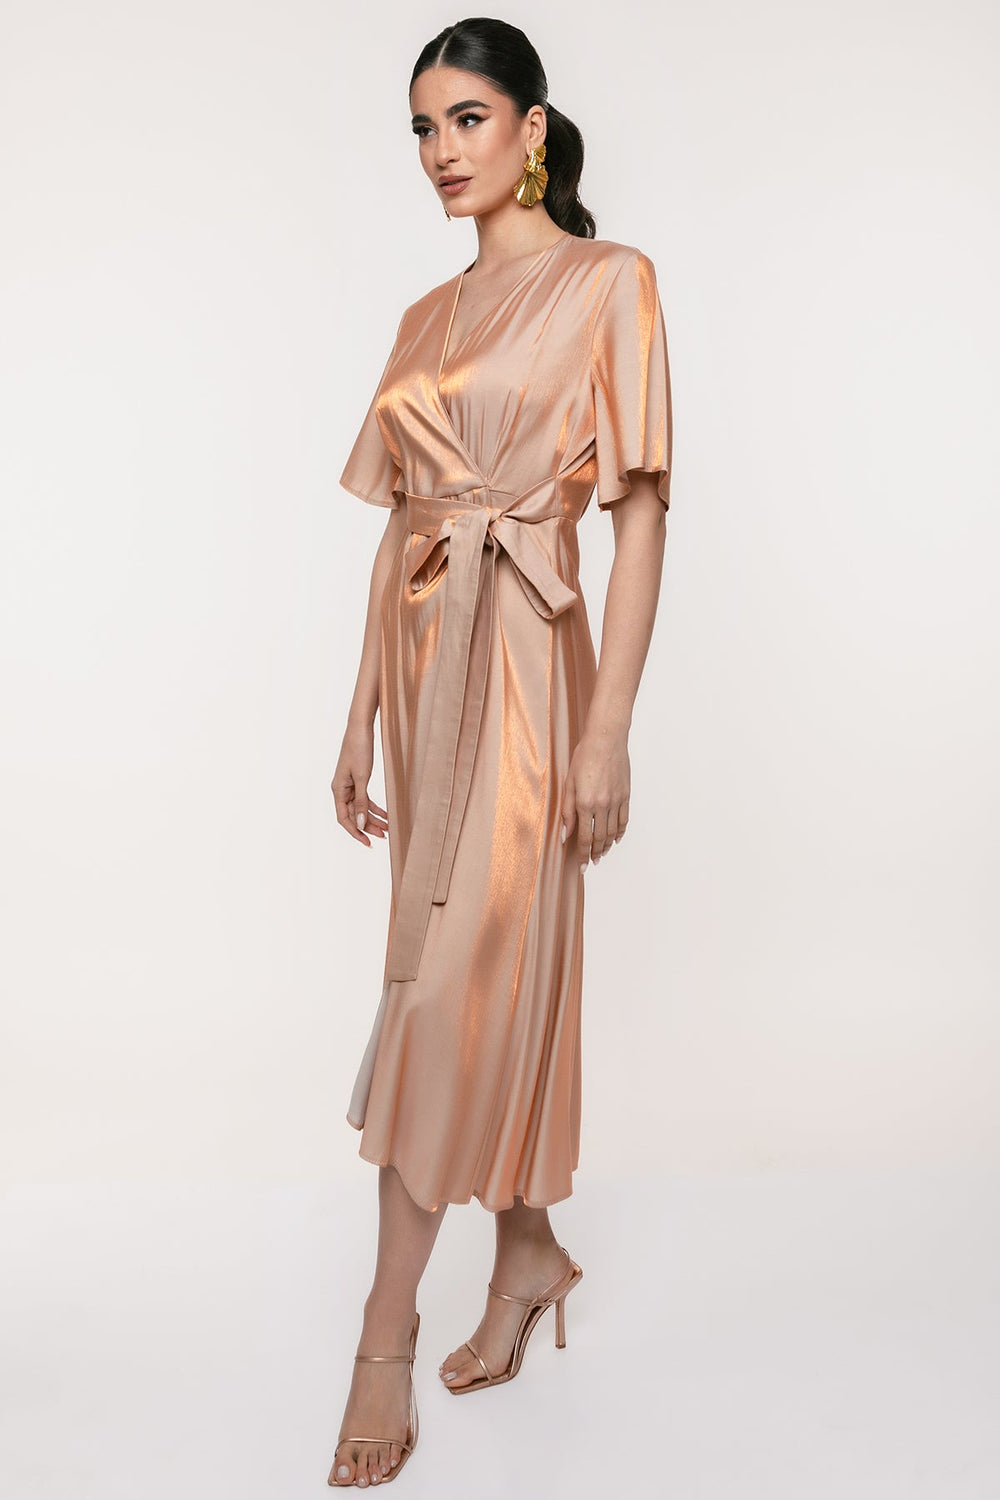 Φόρεμα μεταλιζε μίντι κρουαζέ Access Fashion - A Collection Boutique